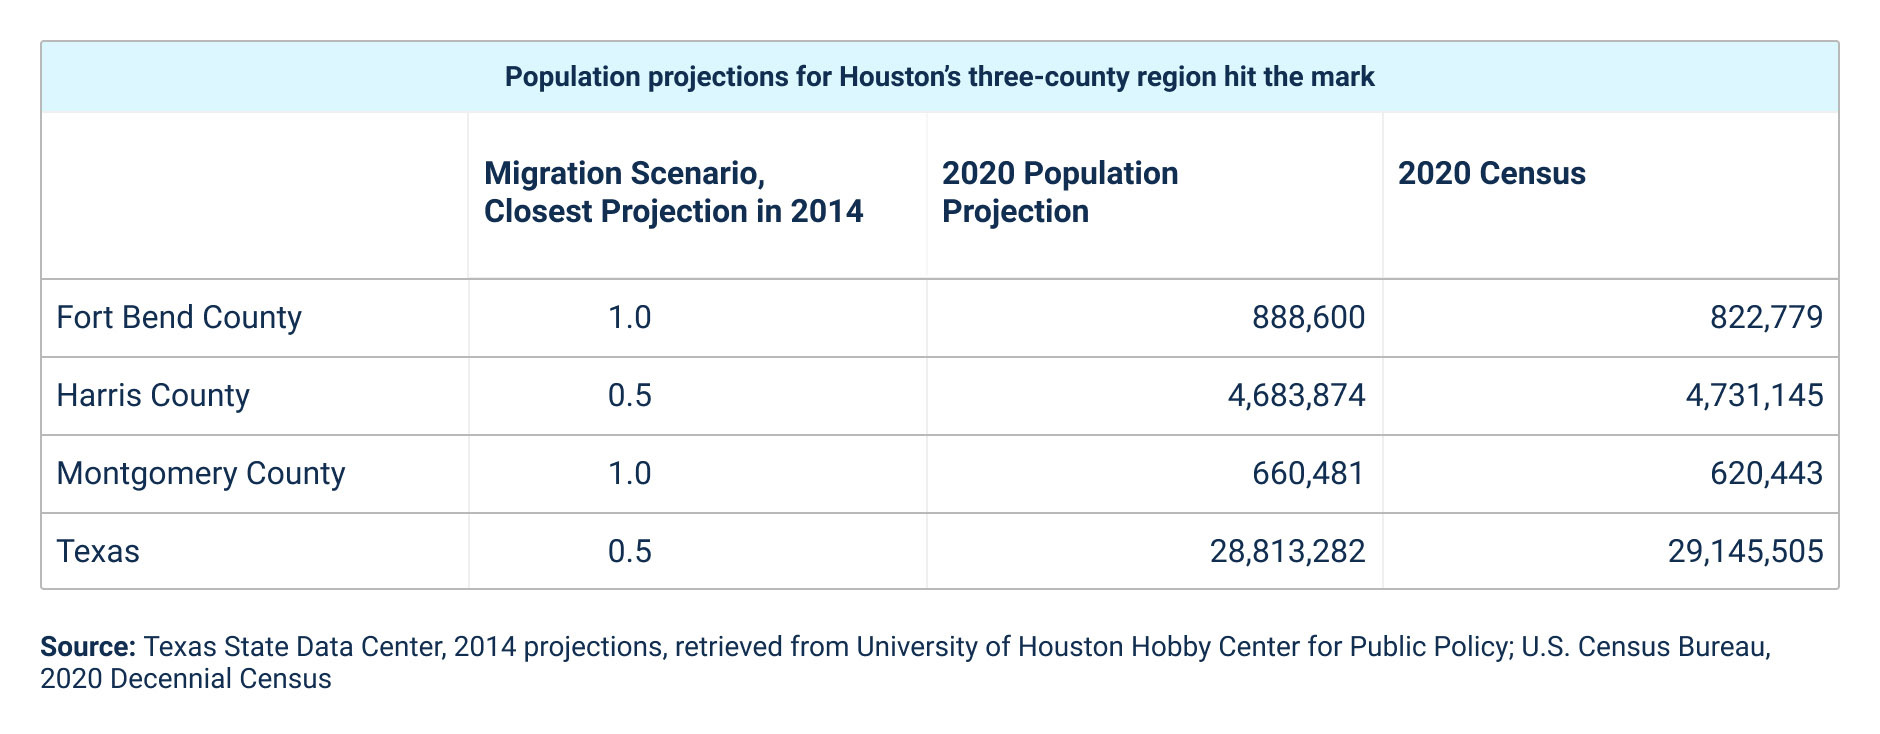 Houston’s threecounty region accounts for a quarter of Texas